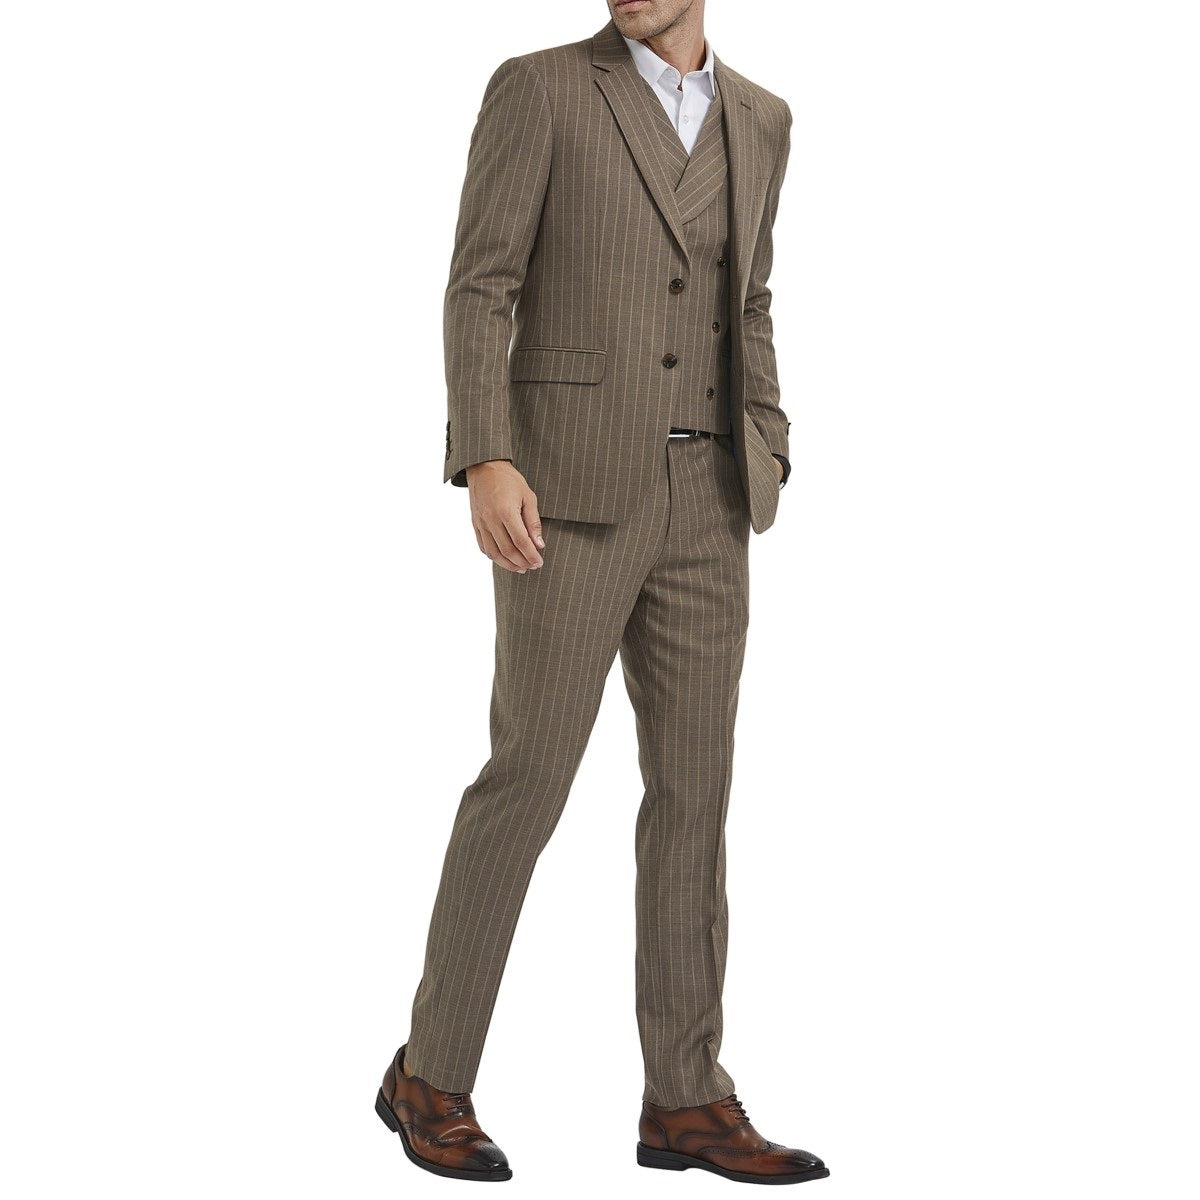 Traje Formal para Hombre TA-M350SK-02 - Formal Suit for Men